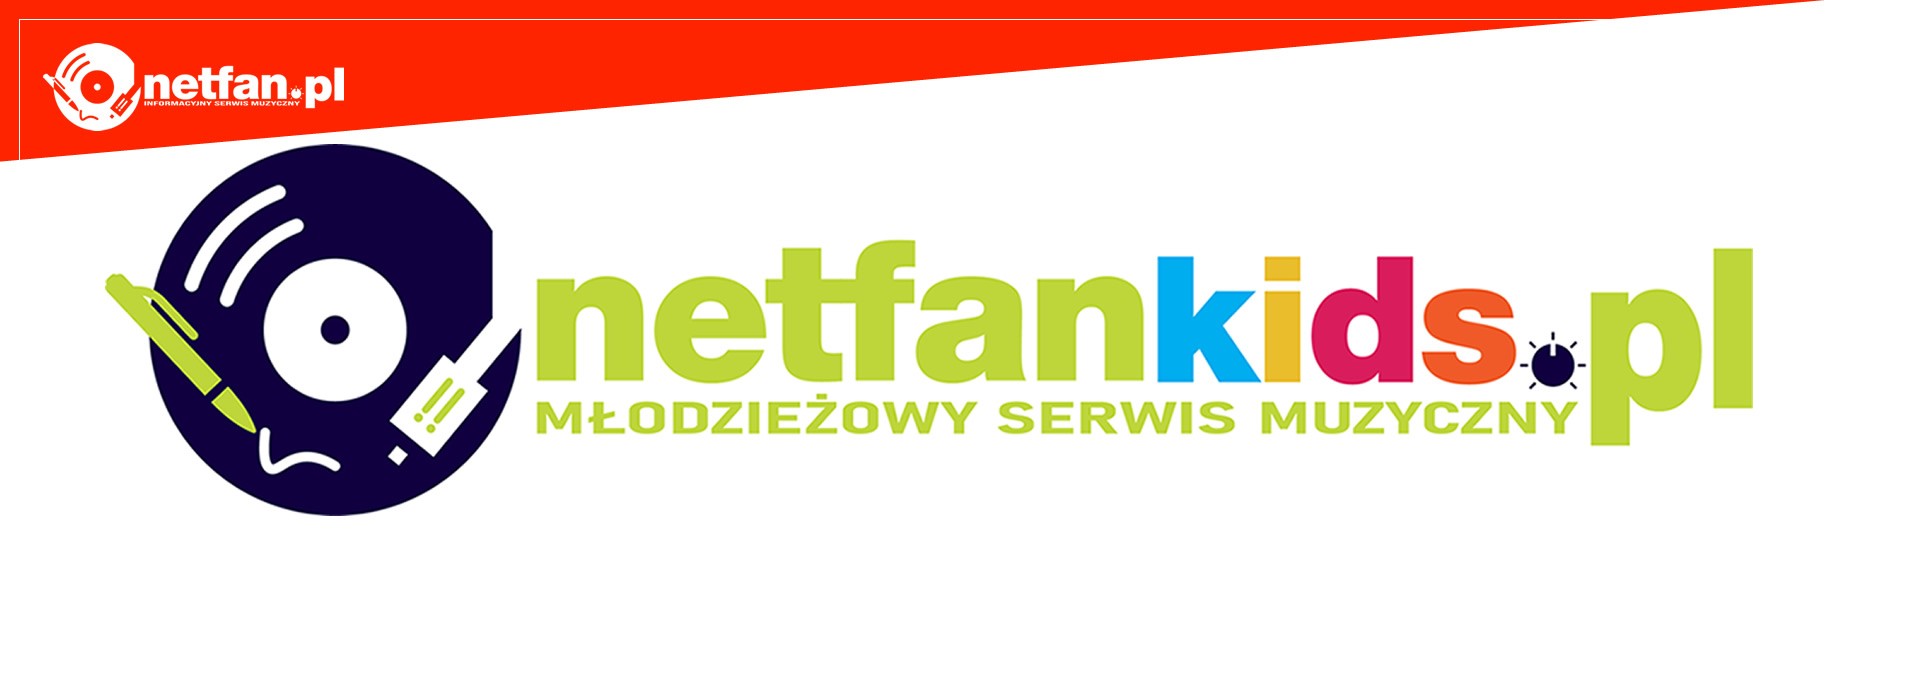 NetFanKids.pl - nowy młodzieżowy serwis muzyczny